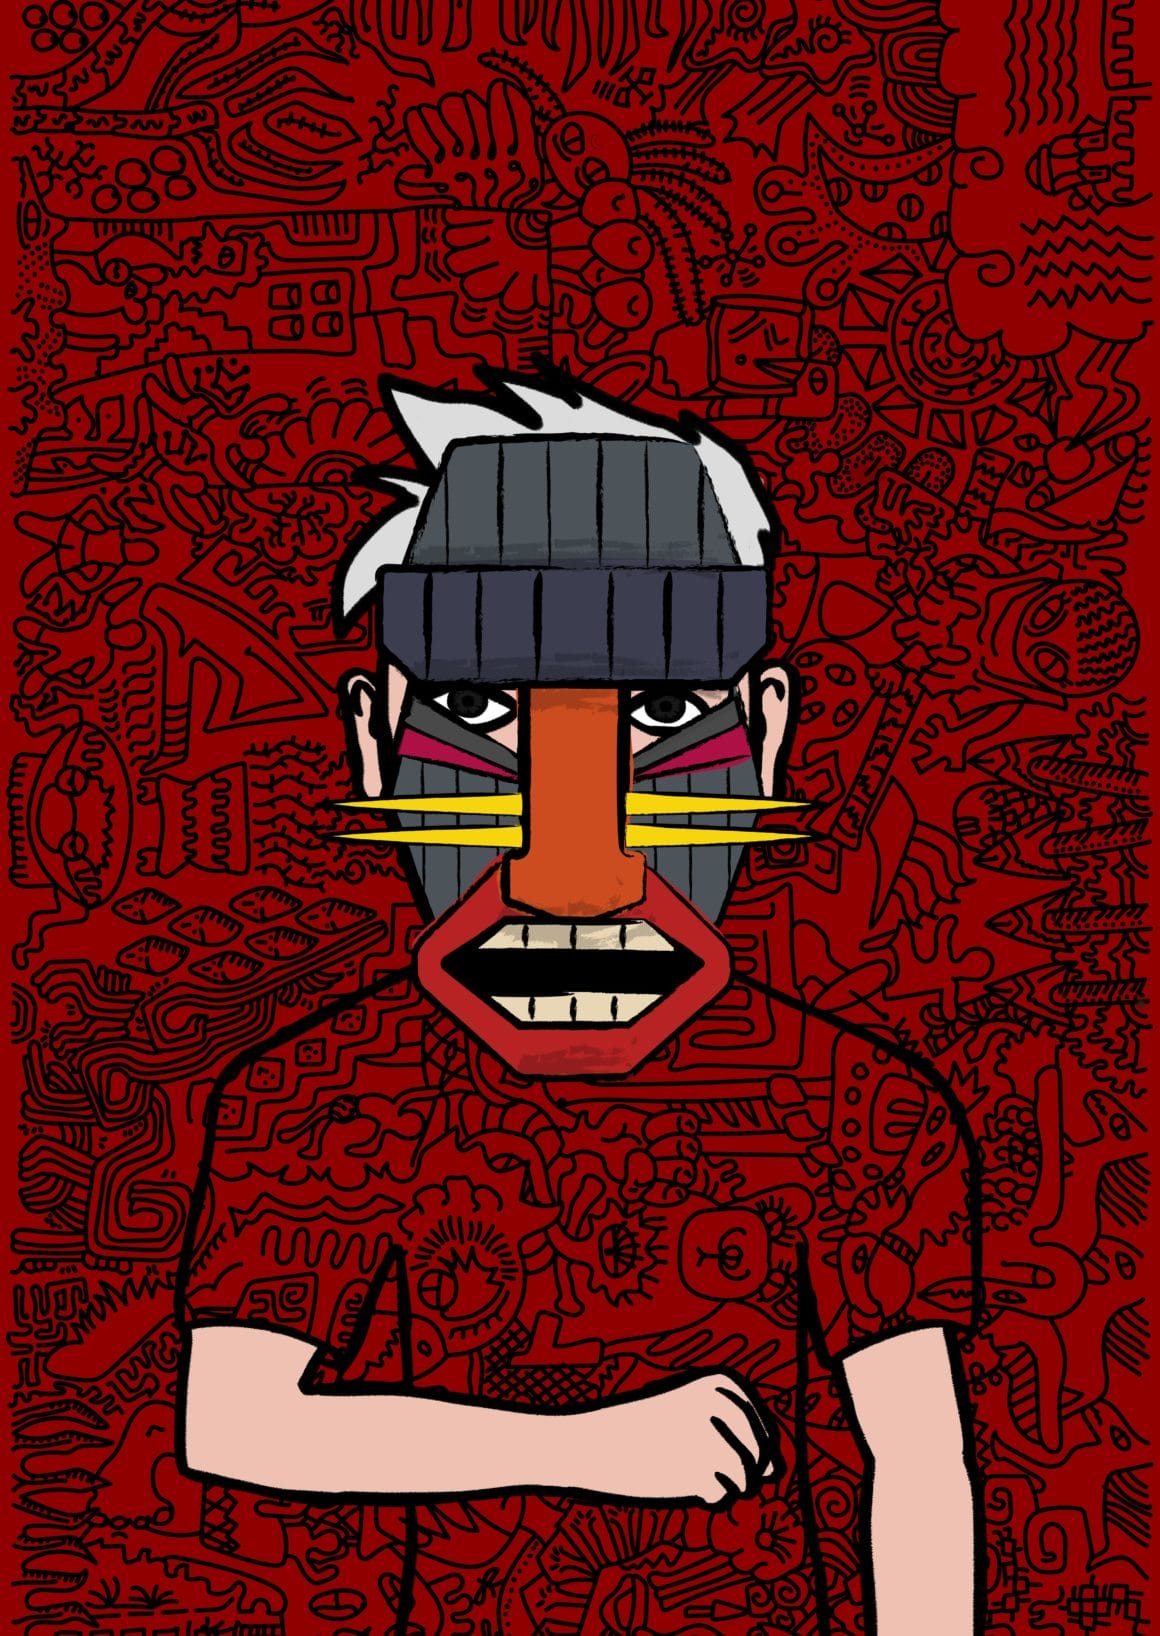 Le fond et le tee shirt du personnage reprennent les mêmes motifs noirs sur fond rouge. Un grand masque cache le visage du personnage.